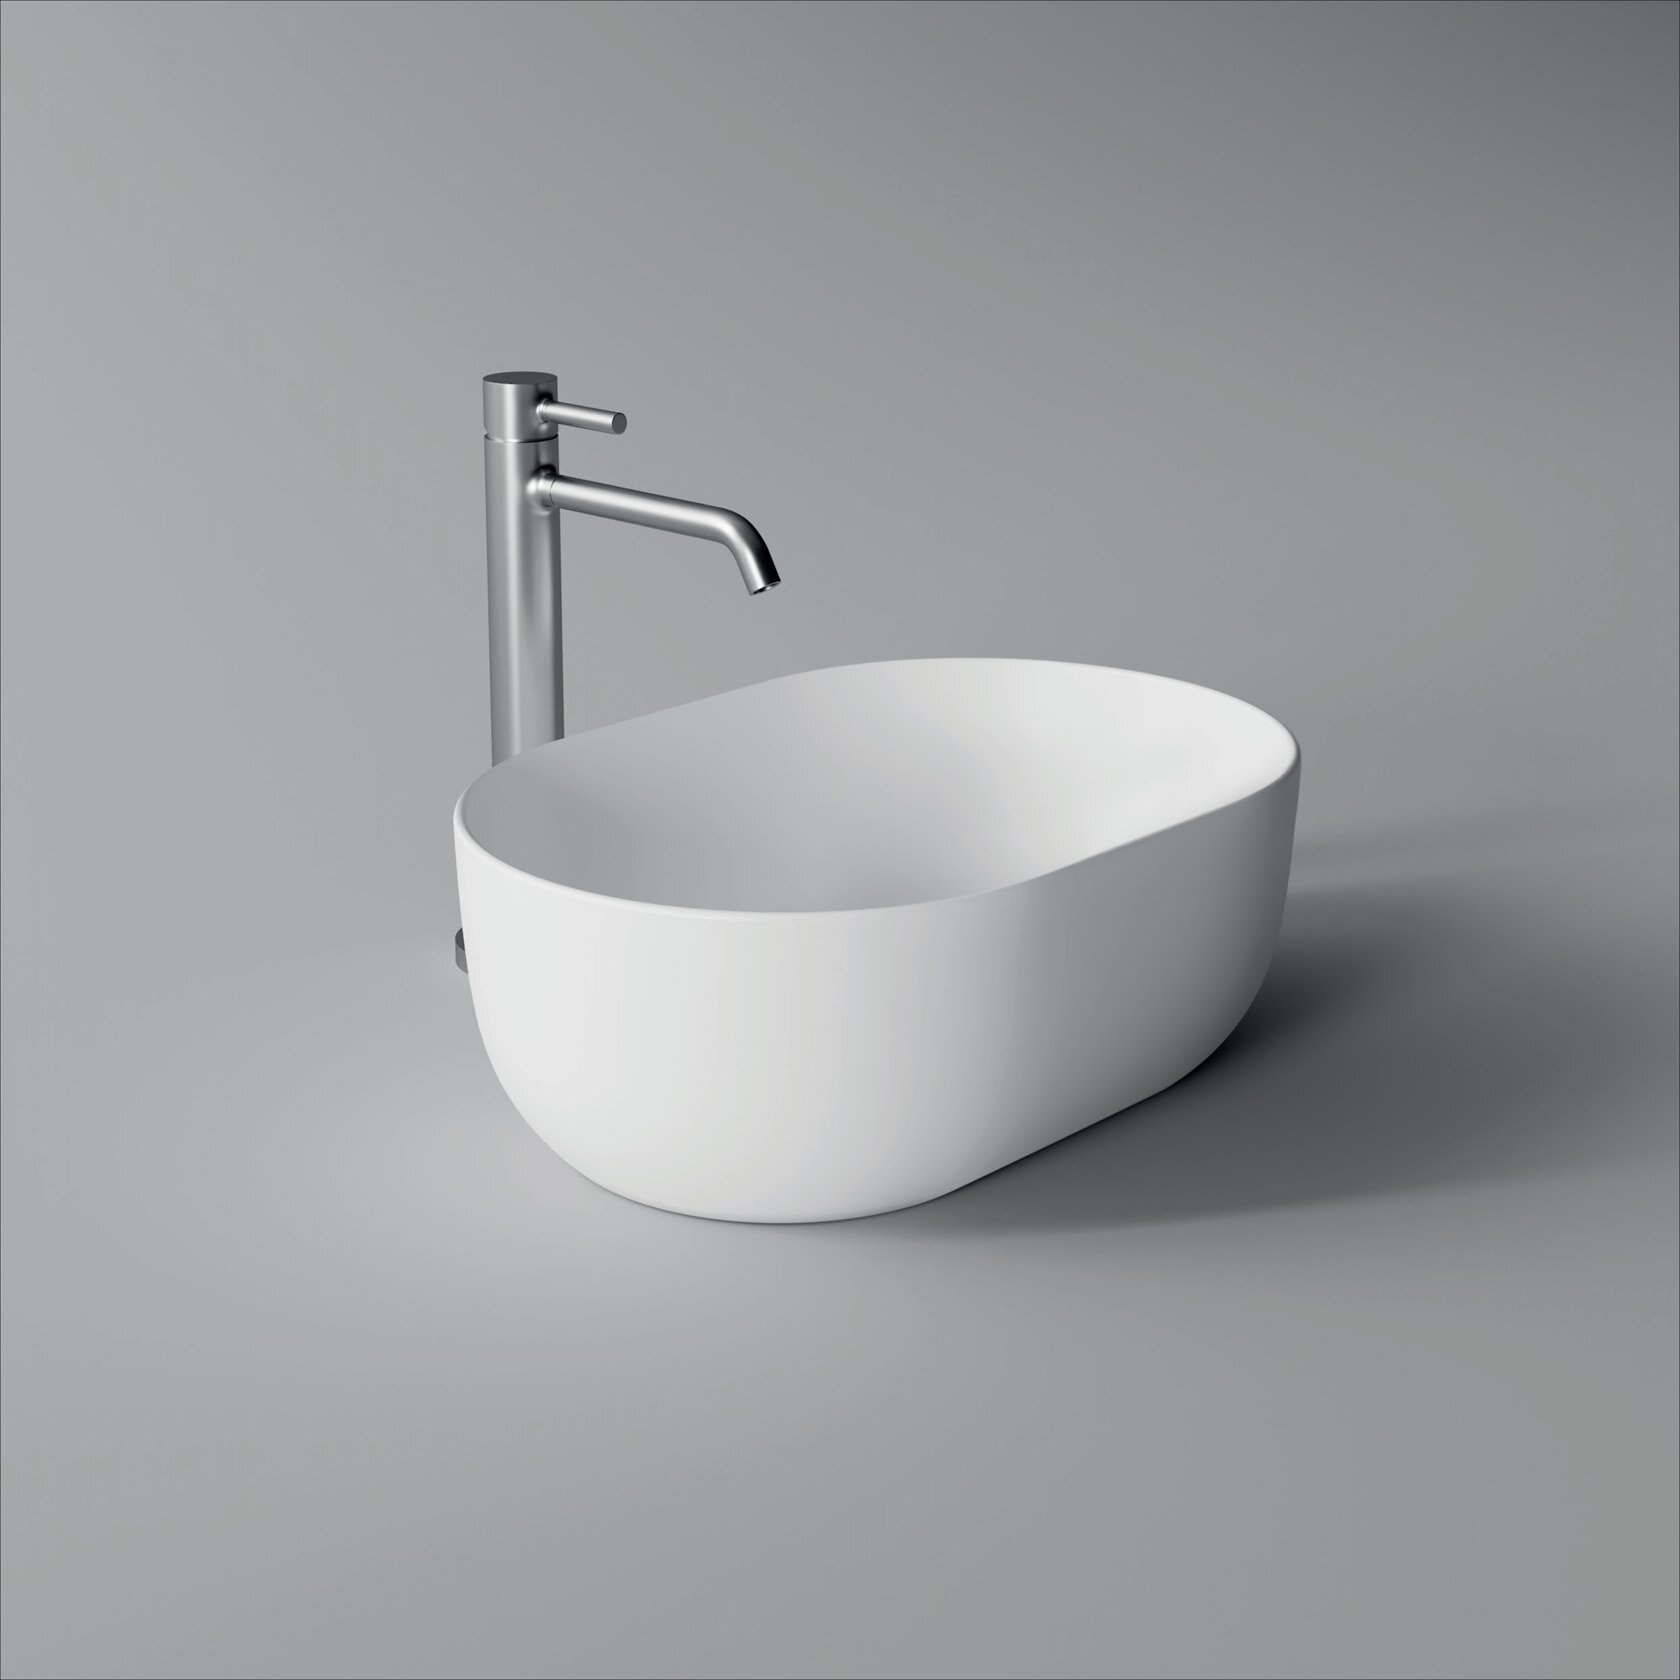 2b_UNICA-Oval-washbasin-Alice-Ceramica-365387-rel2e25830.jpeg